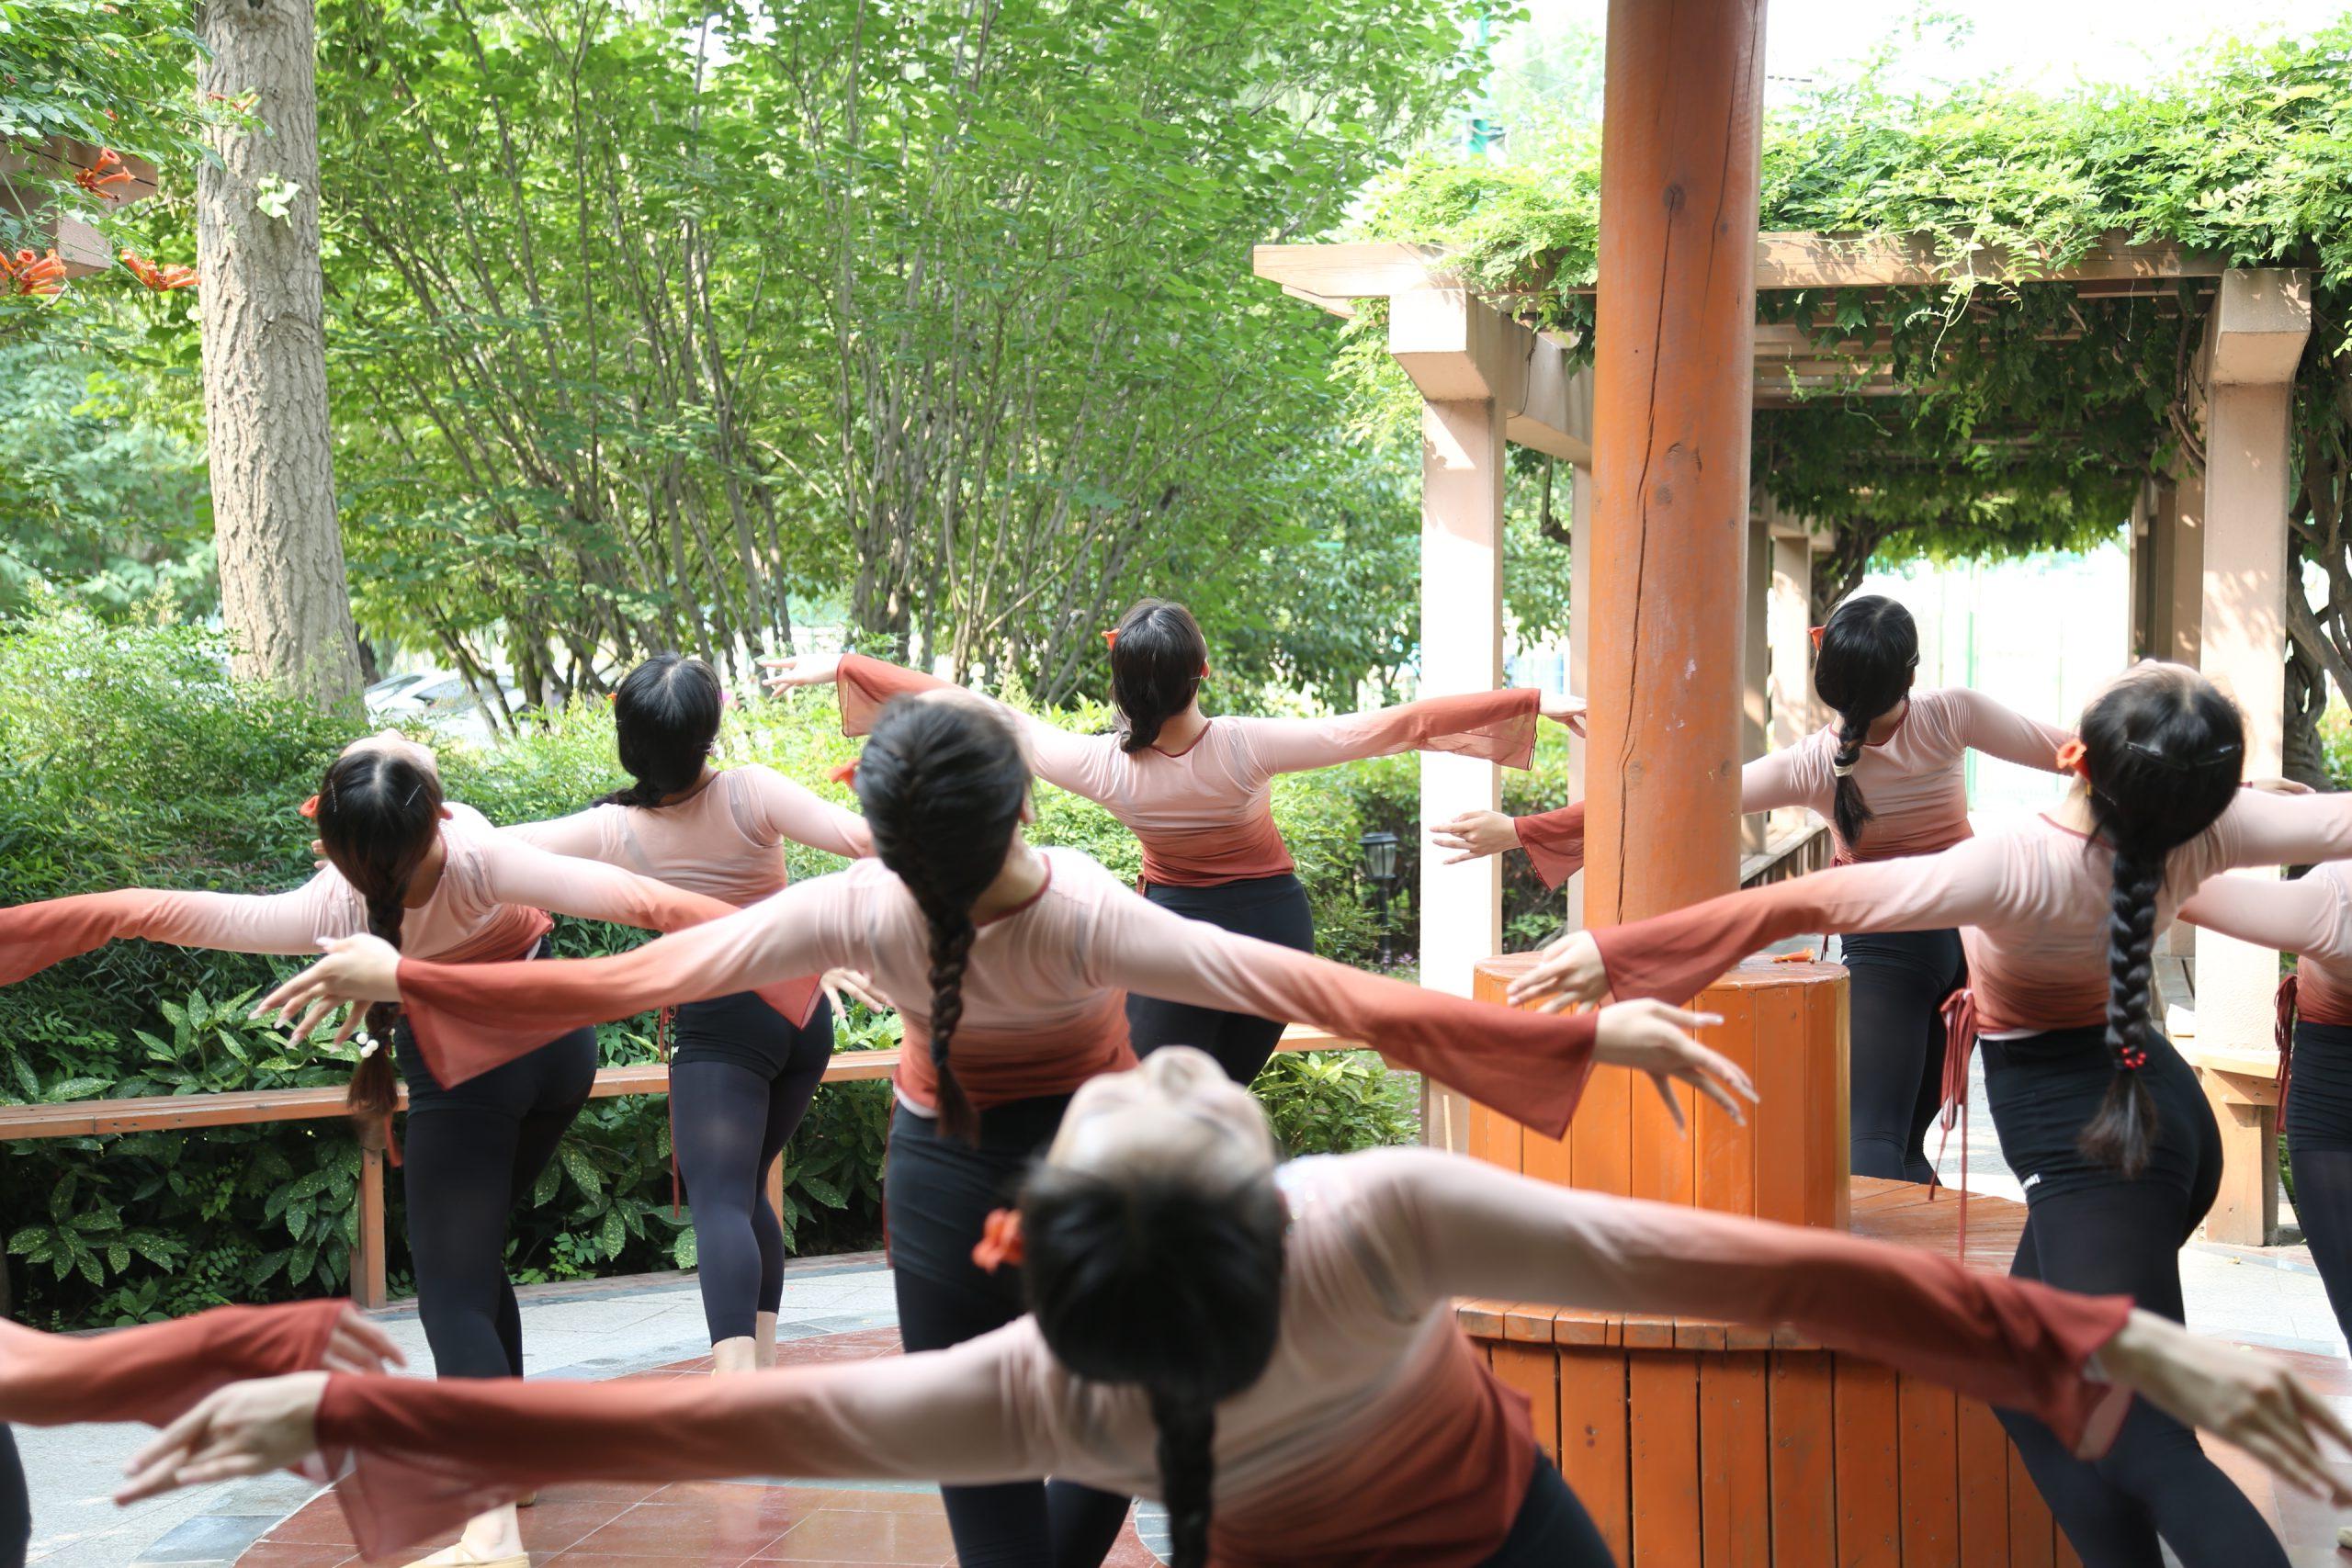 舞蹈表演专业的同学们在校园拍照留念 (http://www.huazistudio.com/) 校内新闻 第1张